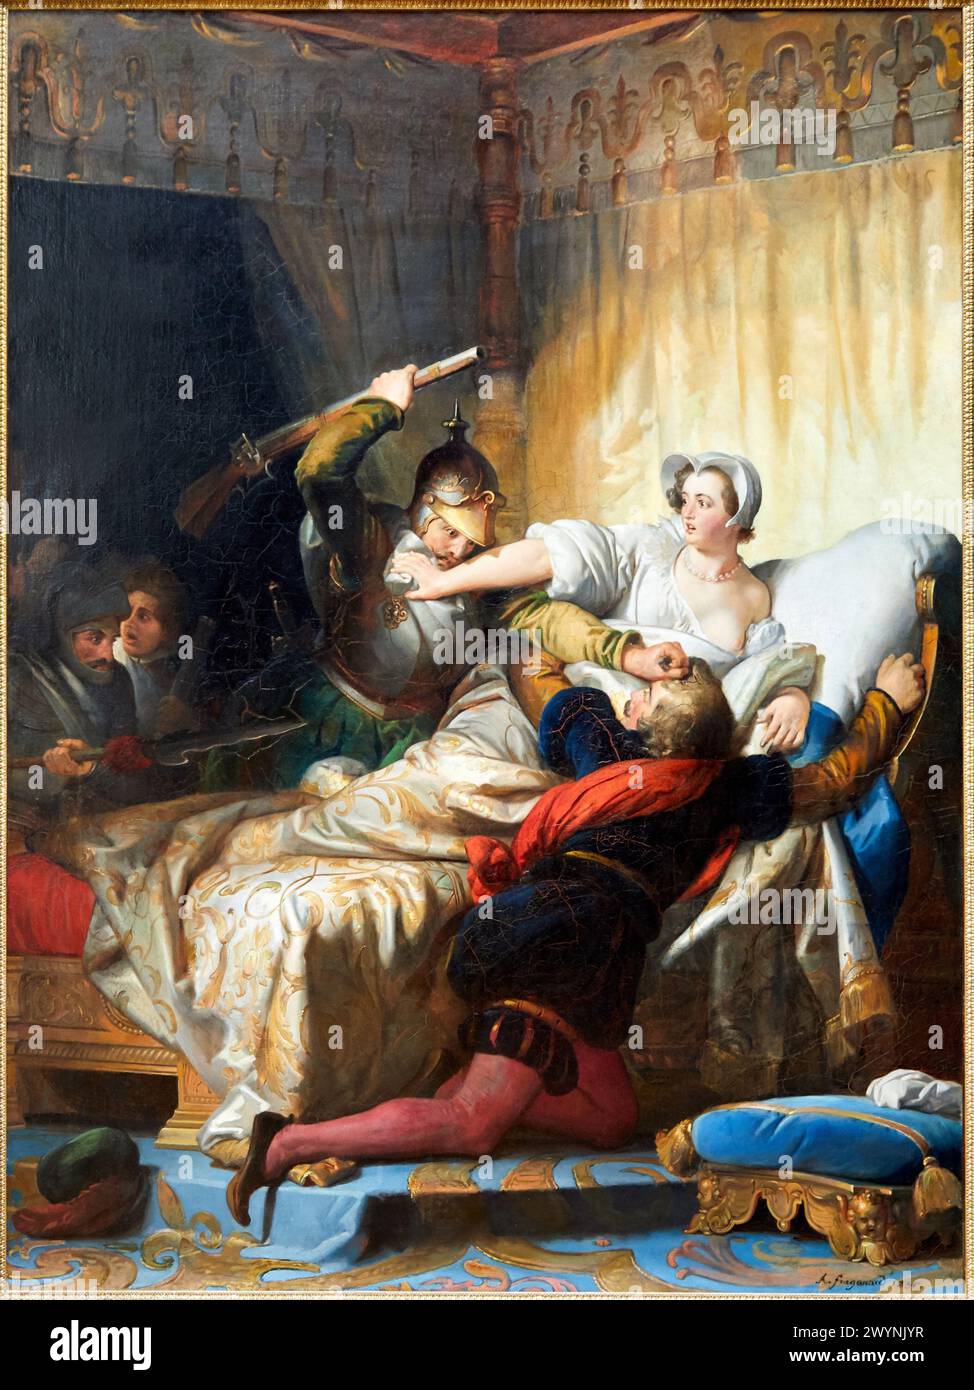 'Escena de la masacre del día de San Bartolomé en el apartamento de la Reina de Navarra', 1836, Alexandre-Évariste Fragonard, 1780-1850, Museo del Louvre, París, Francia, Europa. Foto de stock